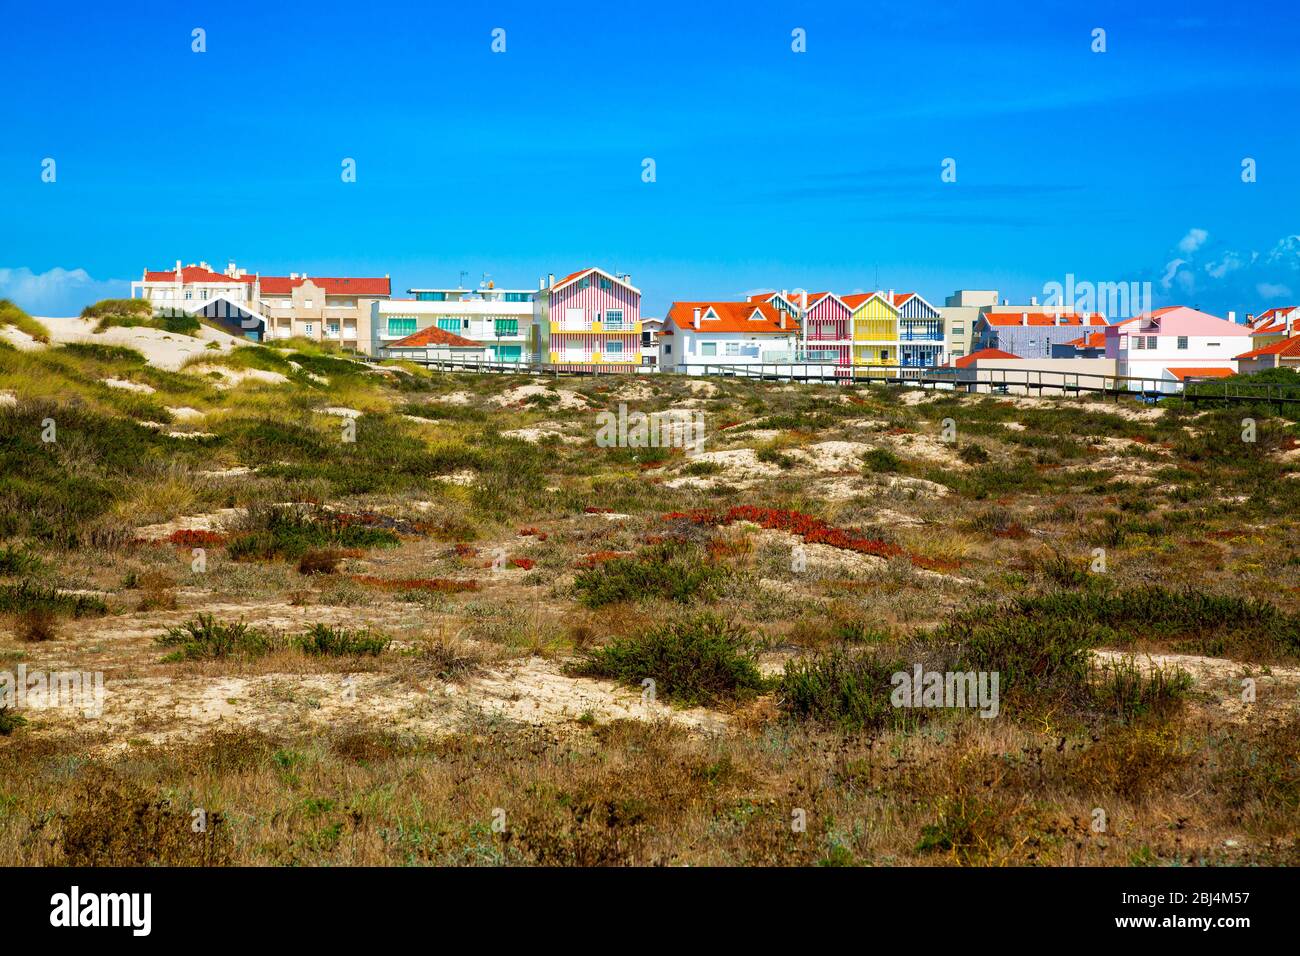 Costa Nova, Portugal: Maisons de plage colorées à rayures appelées Palheiros à côté de la côte atlantique près d'Aveiro. Banque D'Images